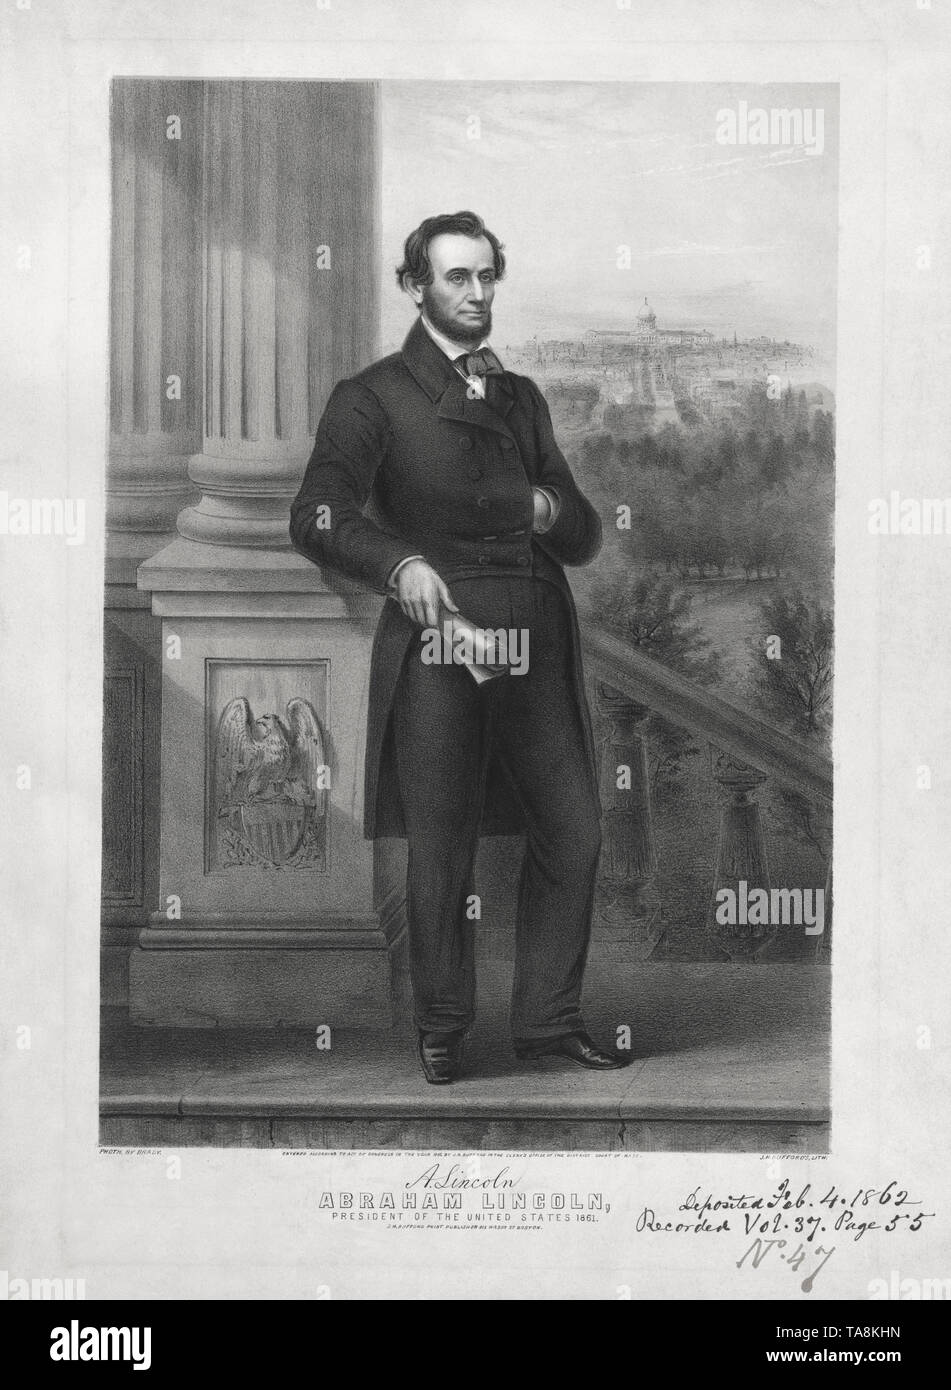 Abraham Lincoln, in voller Länge Porträt mit Hand auf Emanzipations-proklamation, von John H. Bufford, 1862 veröffentlicht. Stockfoto